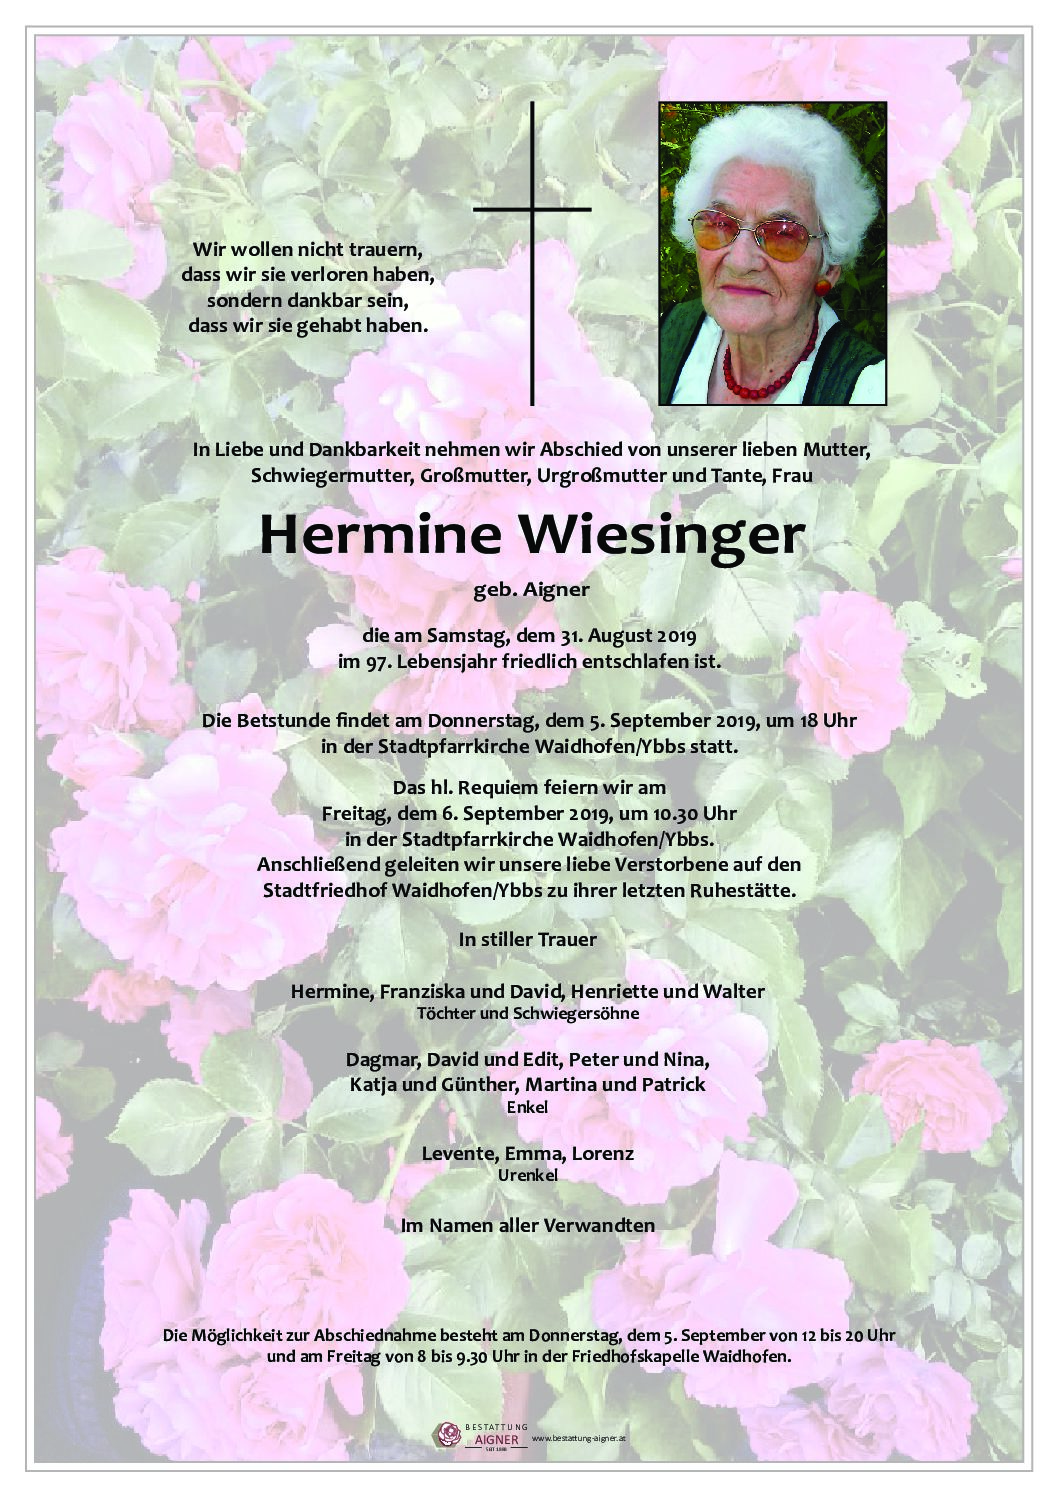 Hermine Wiesinger